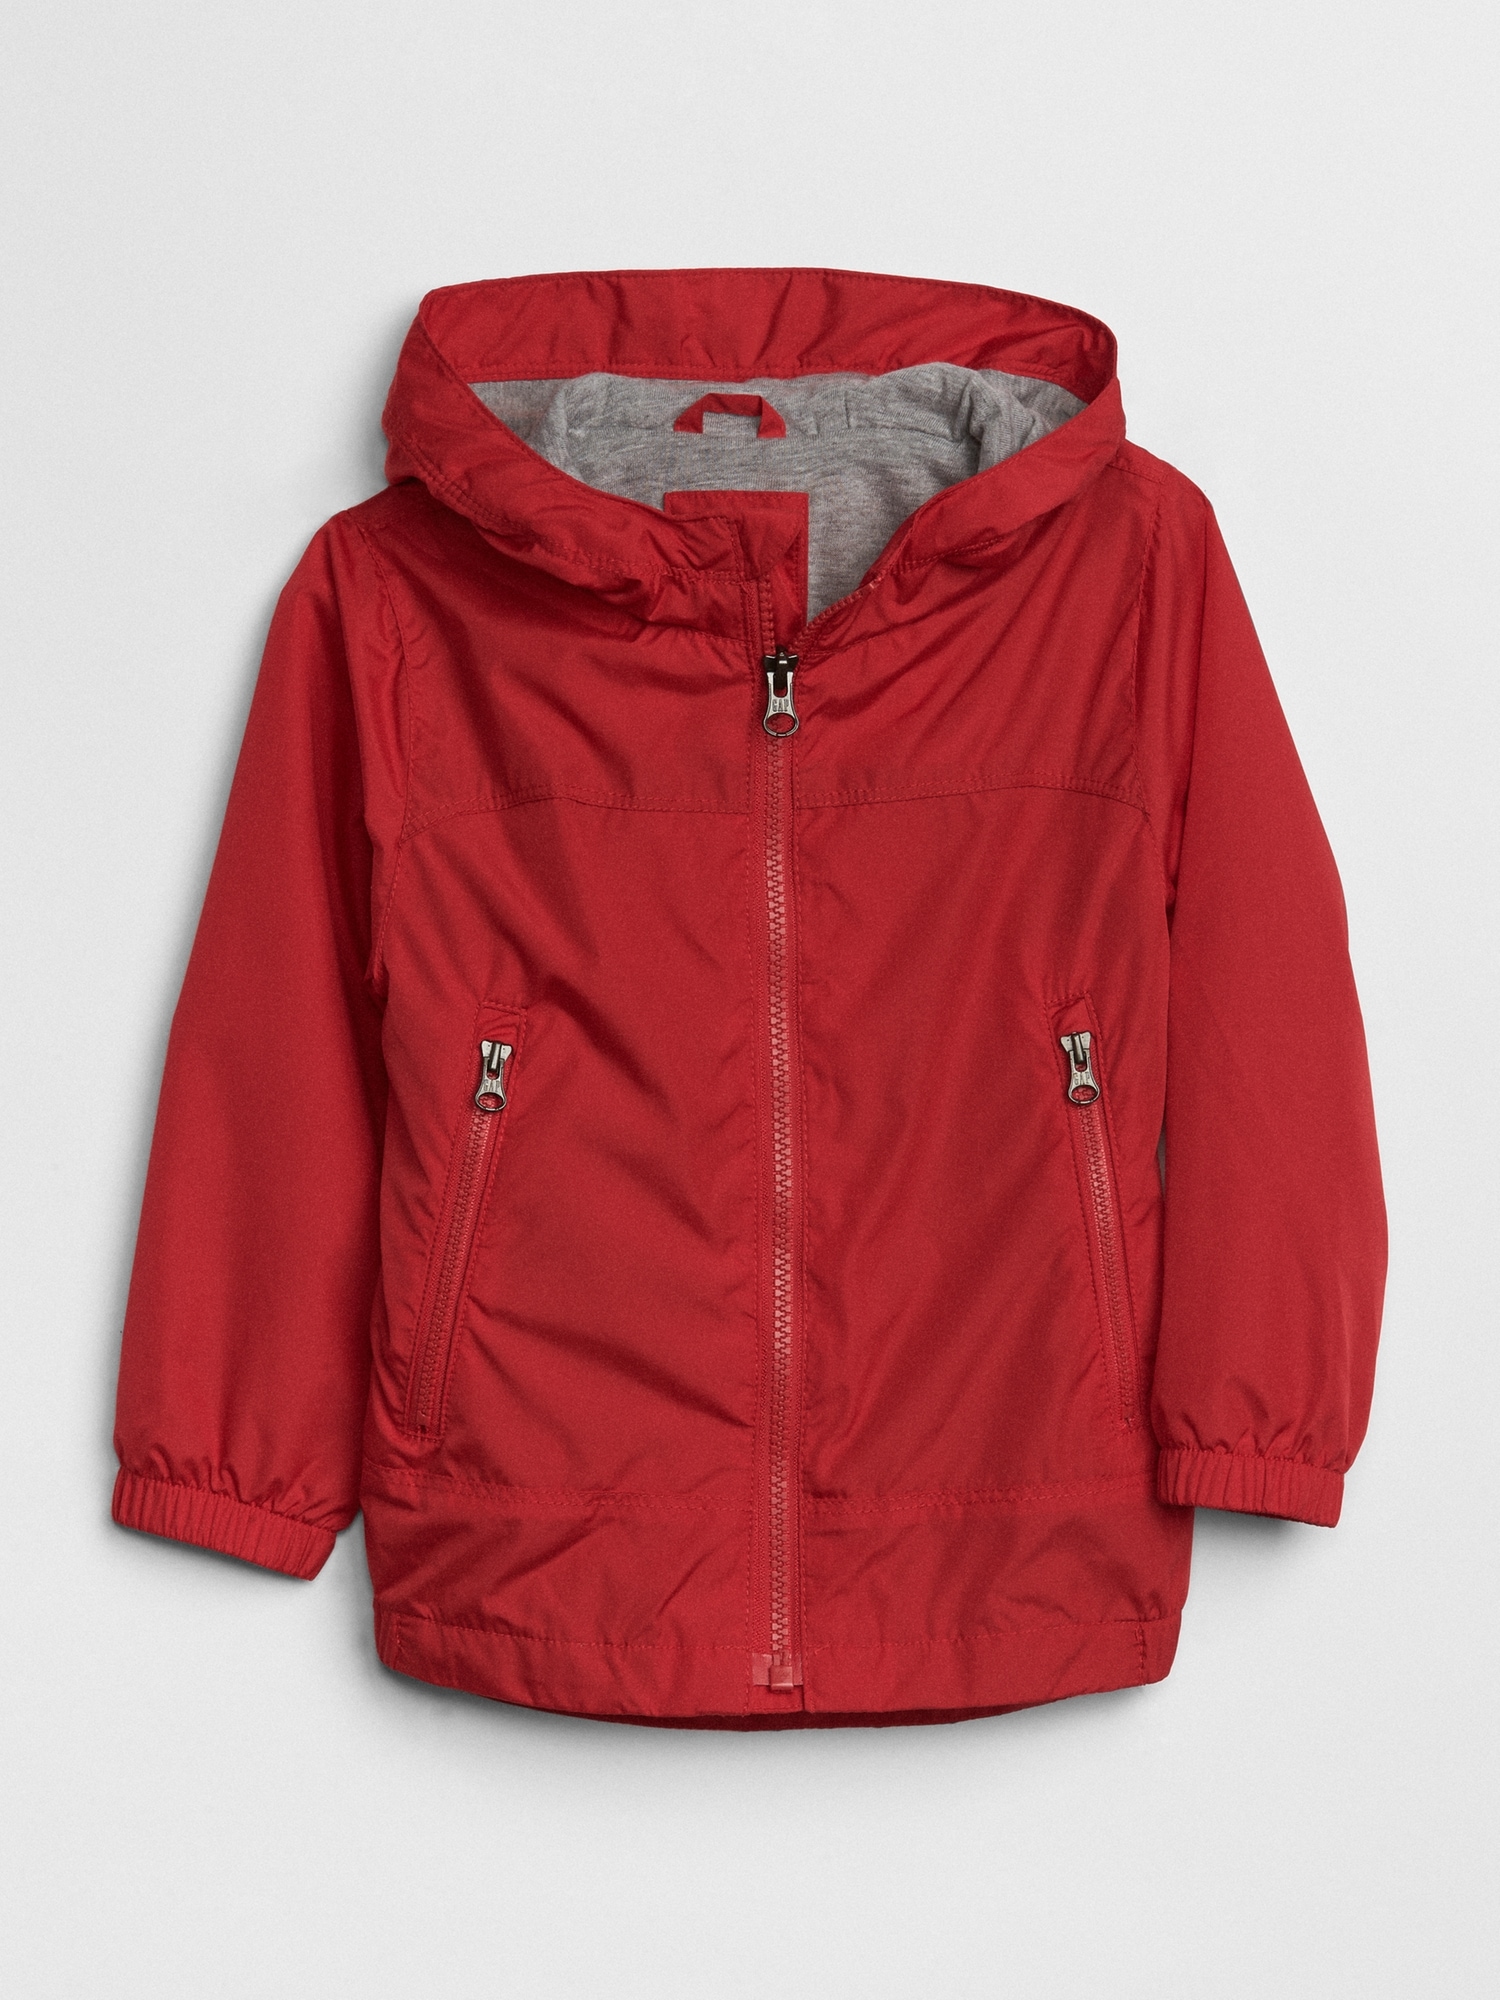 Red & Grey Jersey Lined Windbreaker Jacket